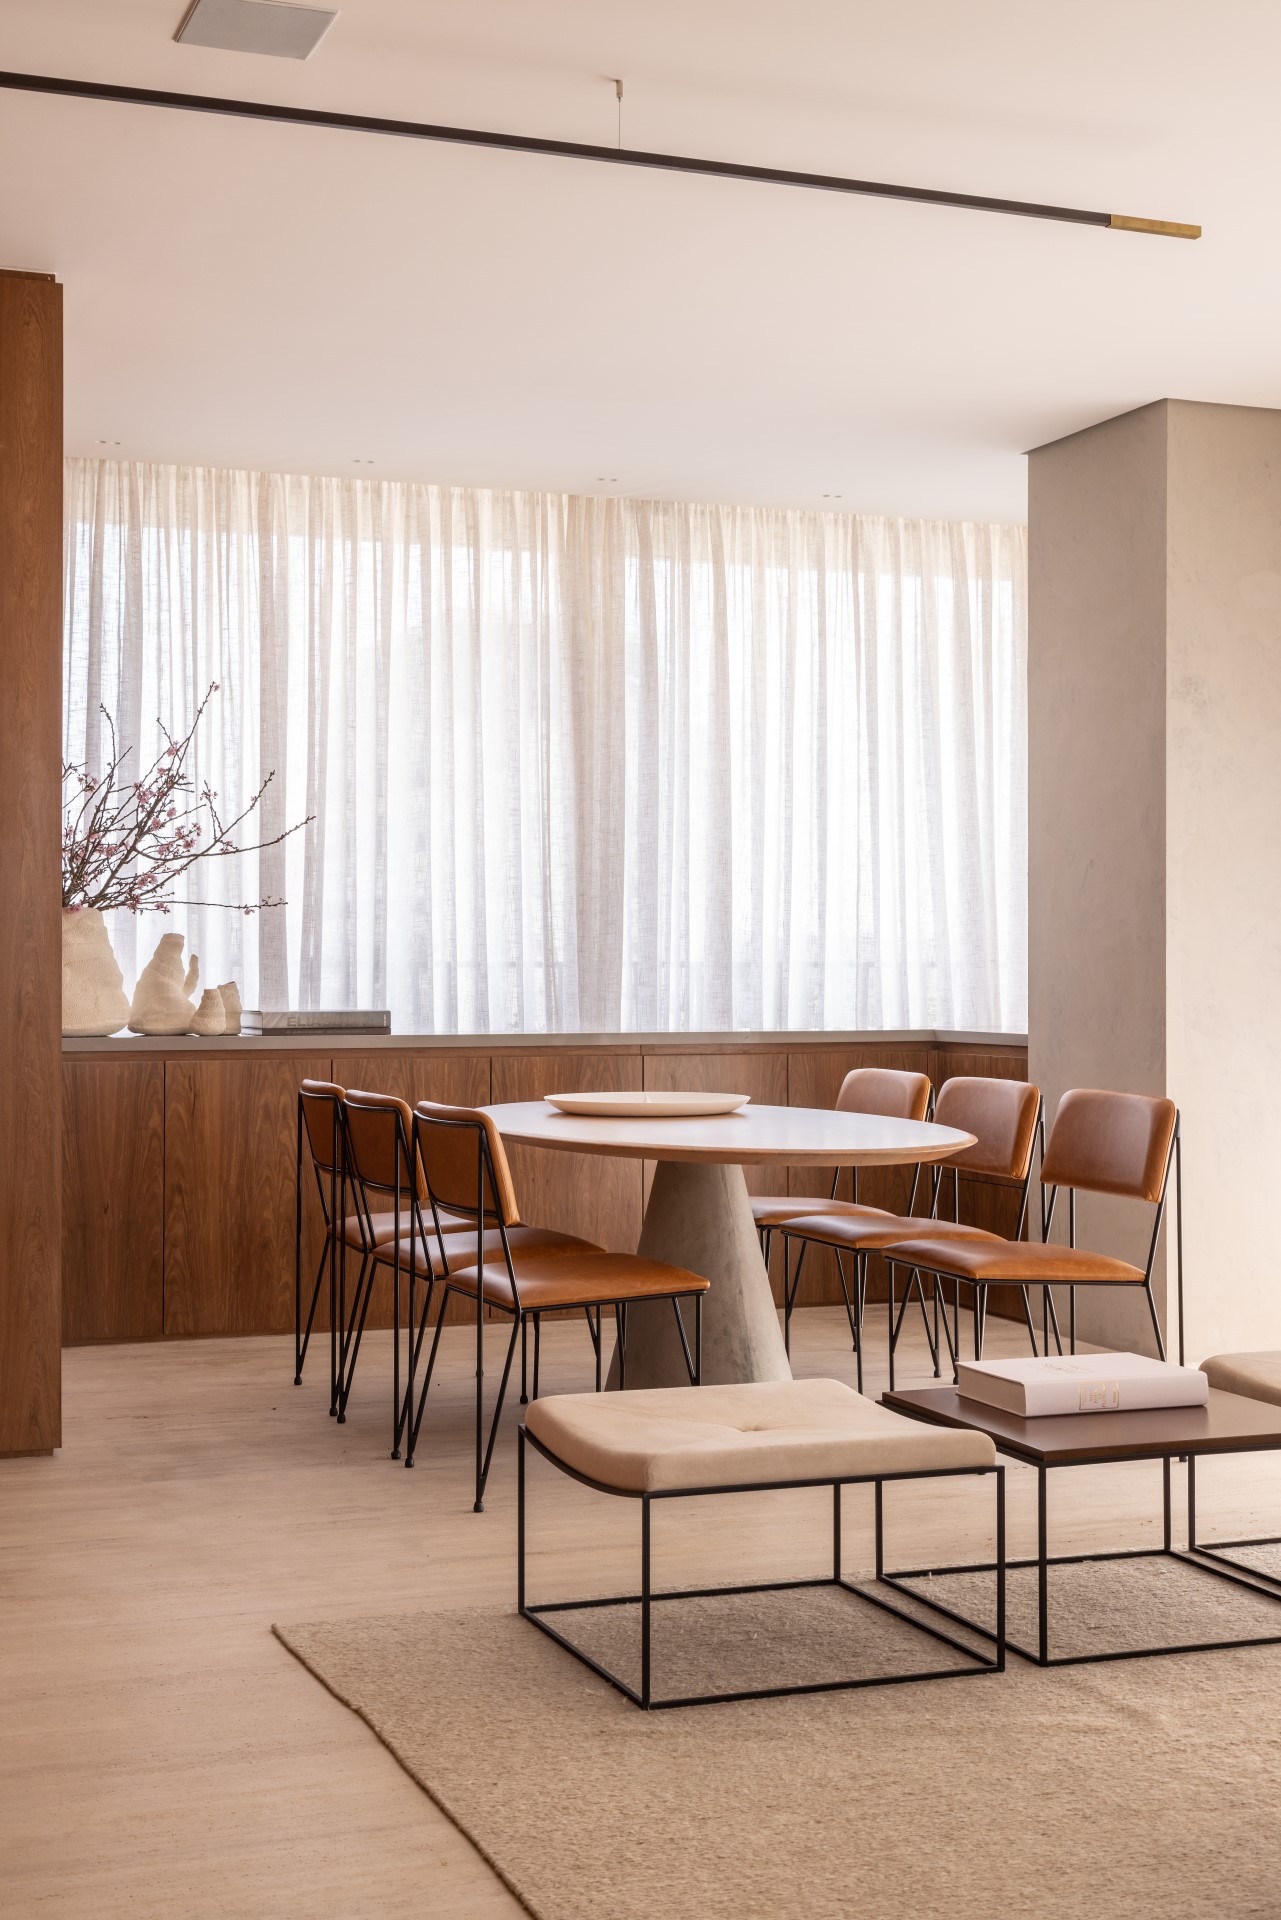 Projeto de Denise Polverini e Fernanda Villefort. Na foto, sala de jantar com tapete bege, mesa oval, cadeiras em couro, buffet de madeira e cortinas.